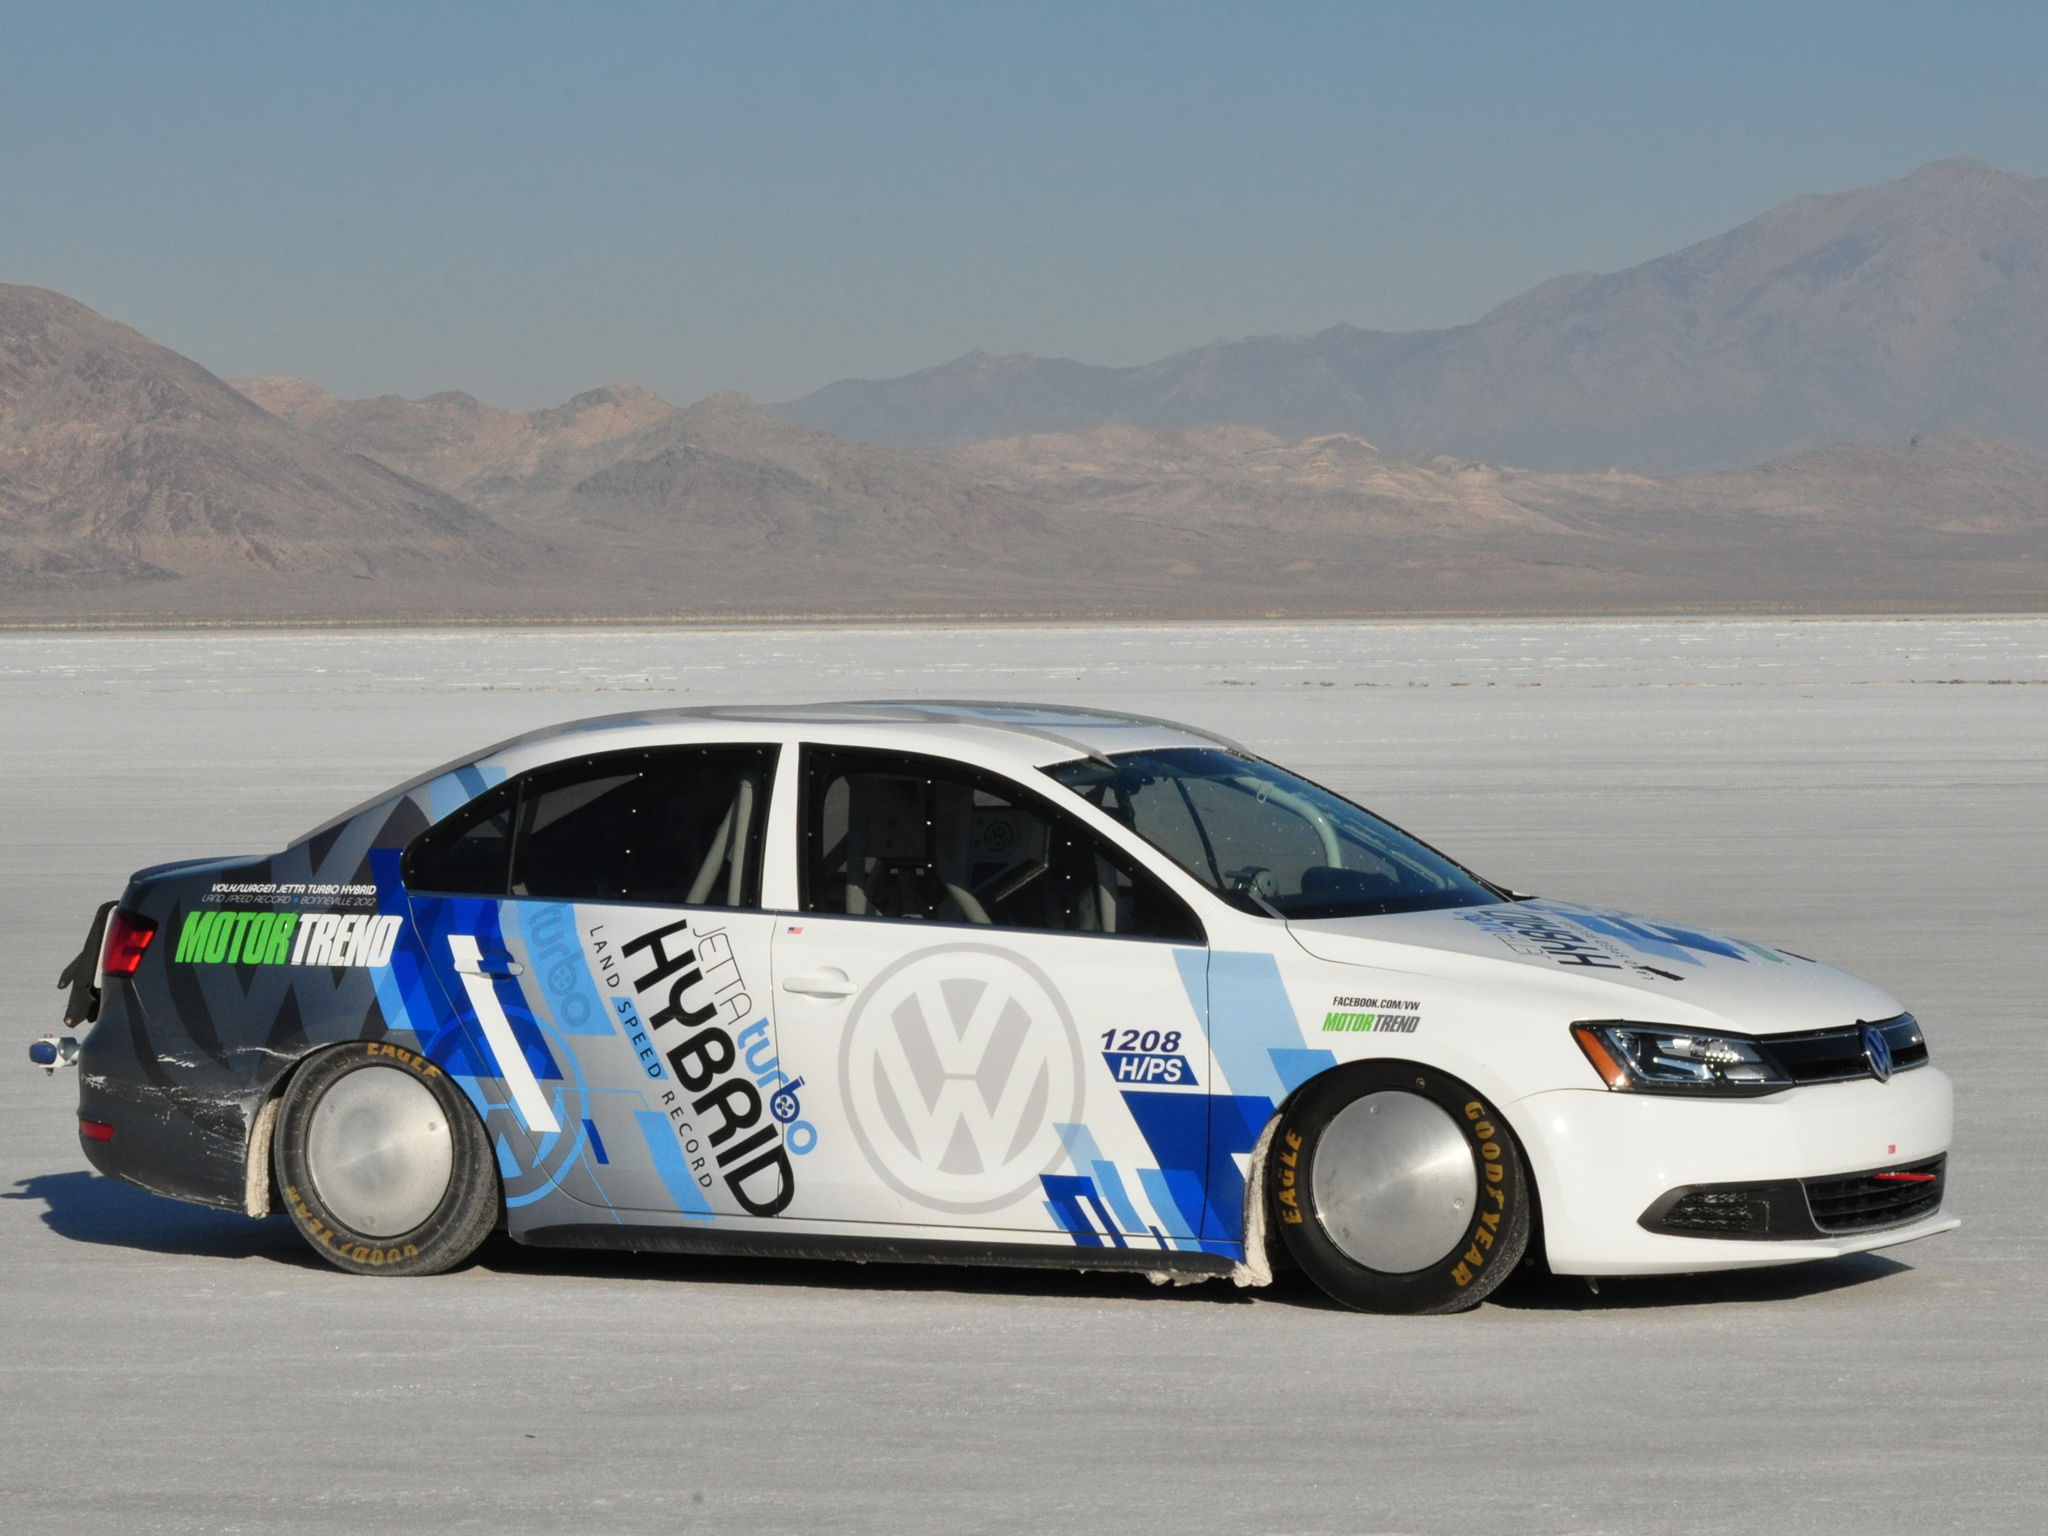 2012, Volkswagen, Jetta, Hybrid, Typ 1b, Race, Racing Wallpaper